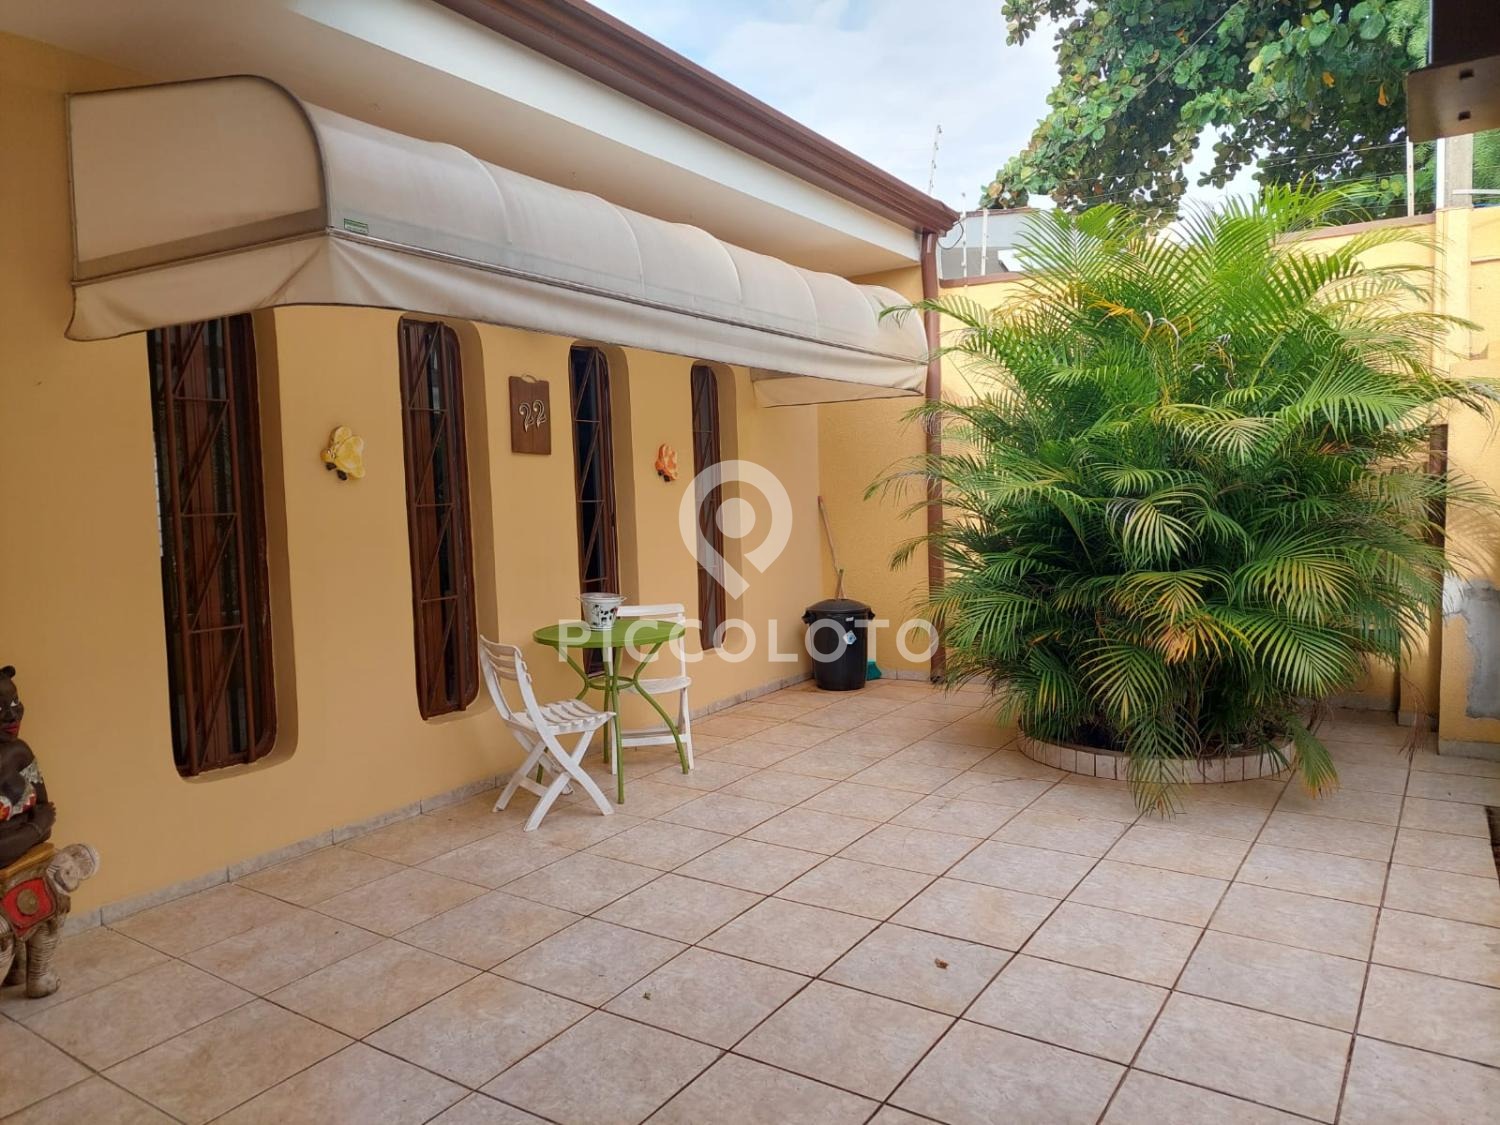 Piccoloto -Casa à venda no Jardim Alto da Barra em Campinas